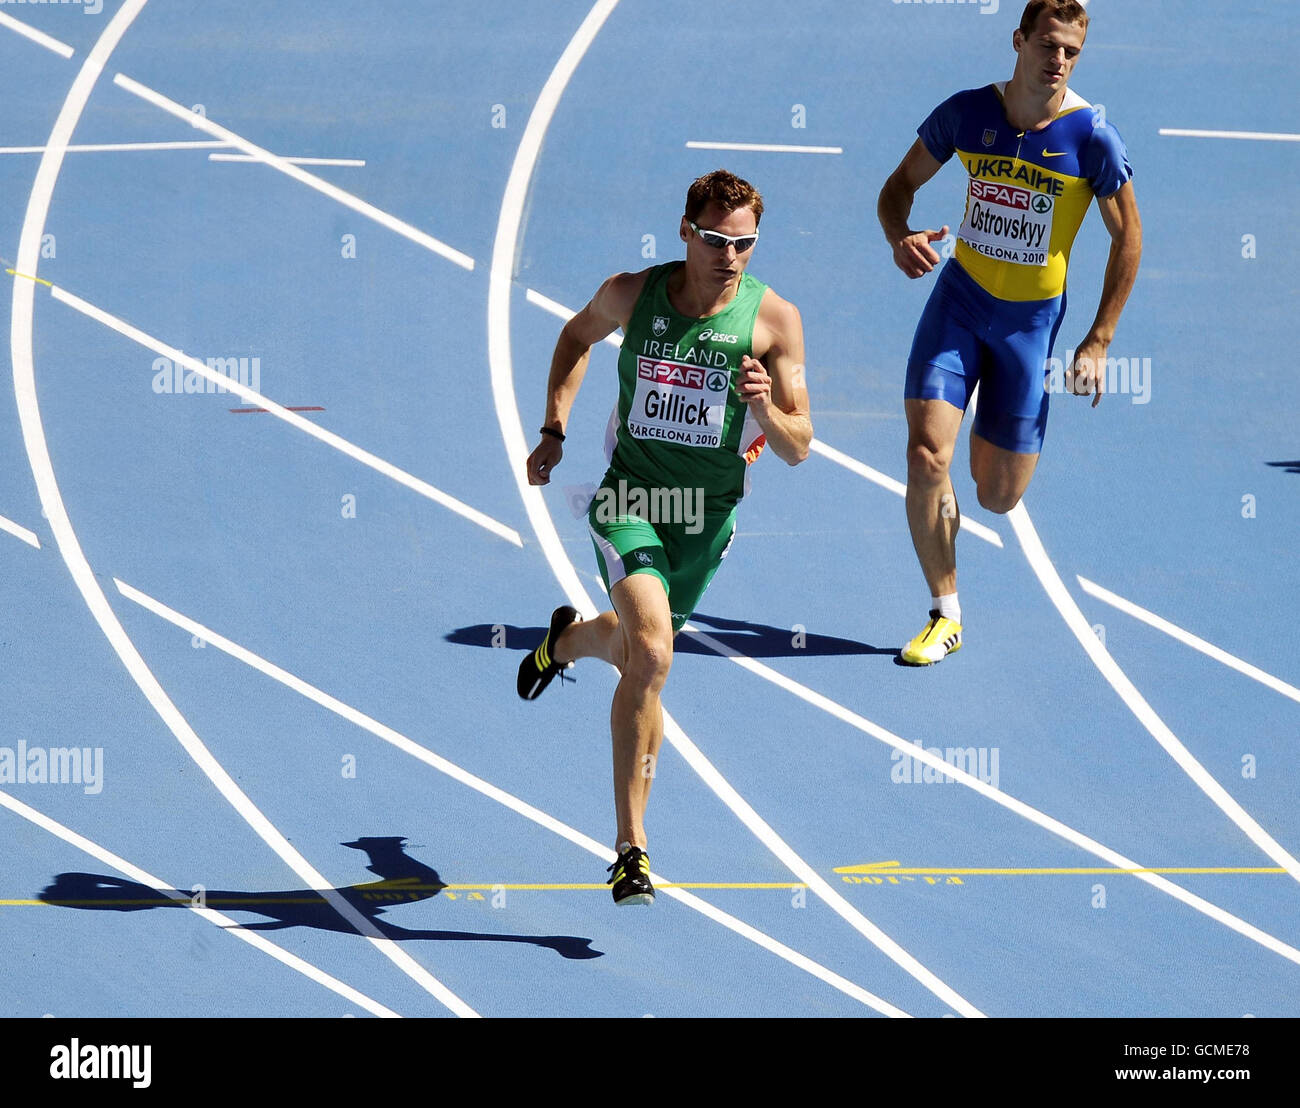 Atletica - IAAF Campionati Europei 2010 - Giorno 1 - Stadio Olimpico Foto Stock